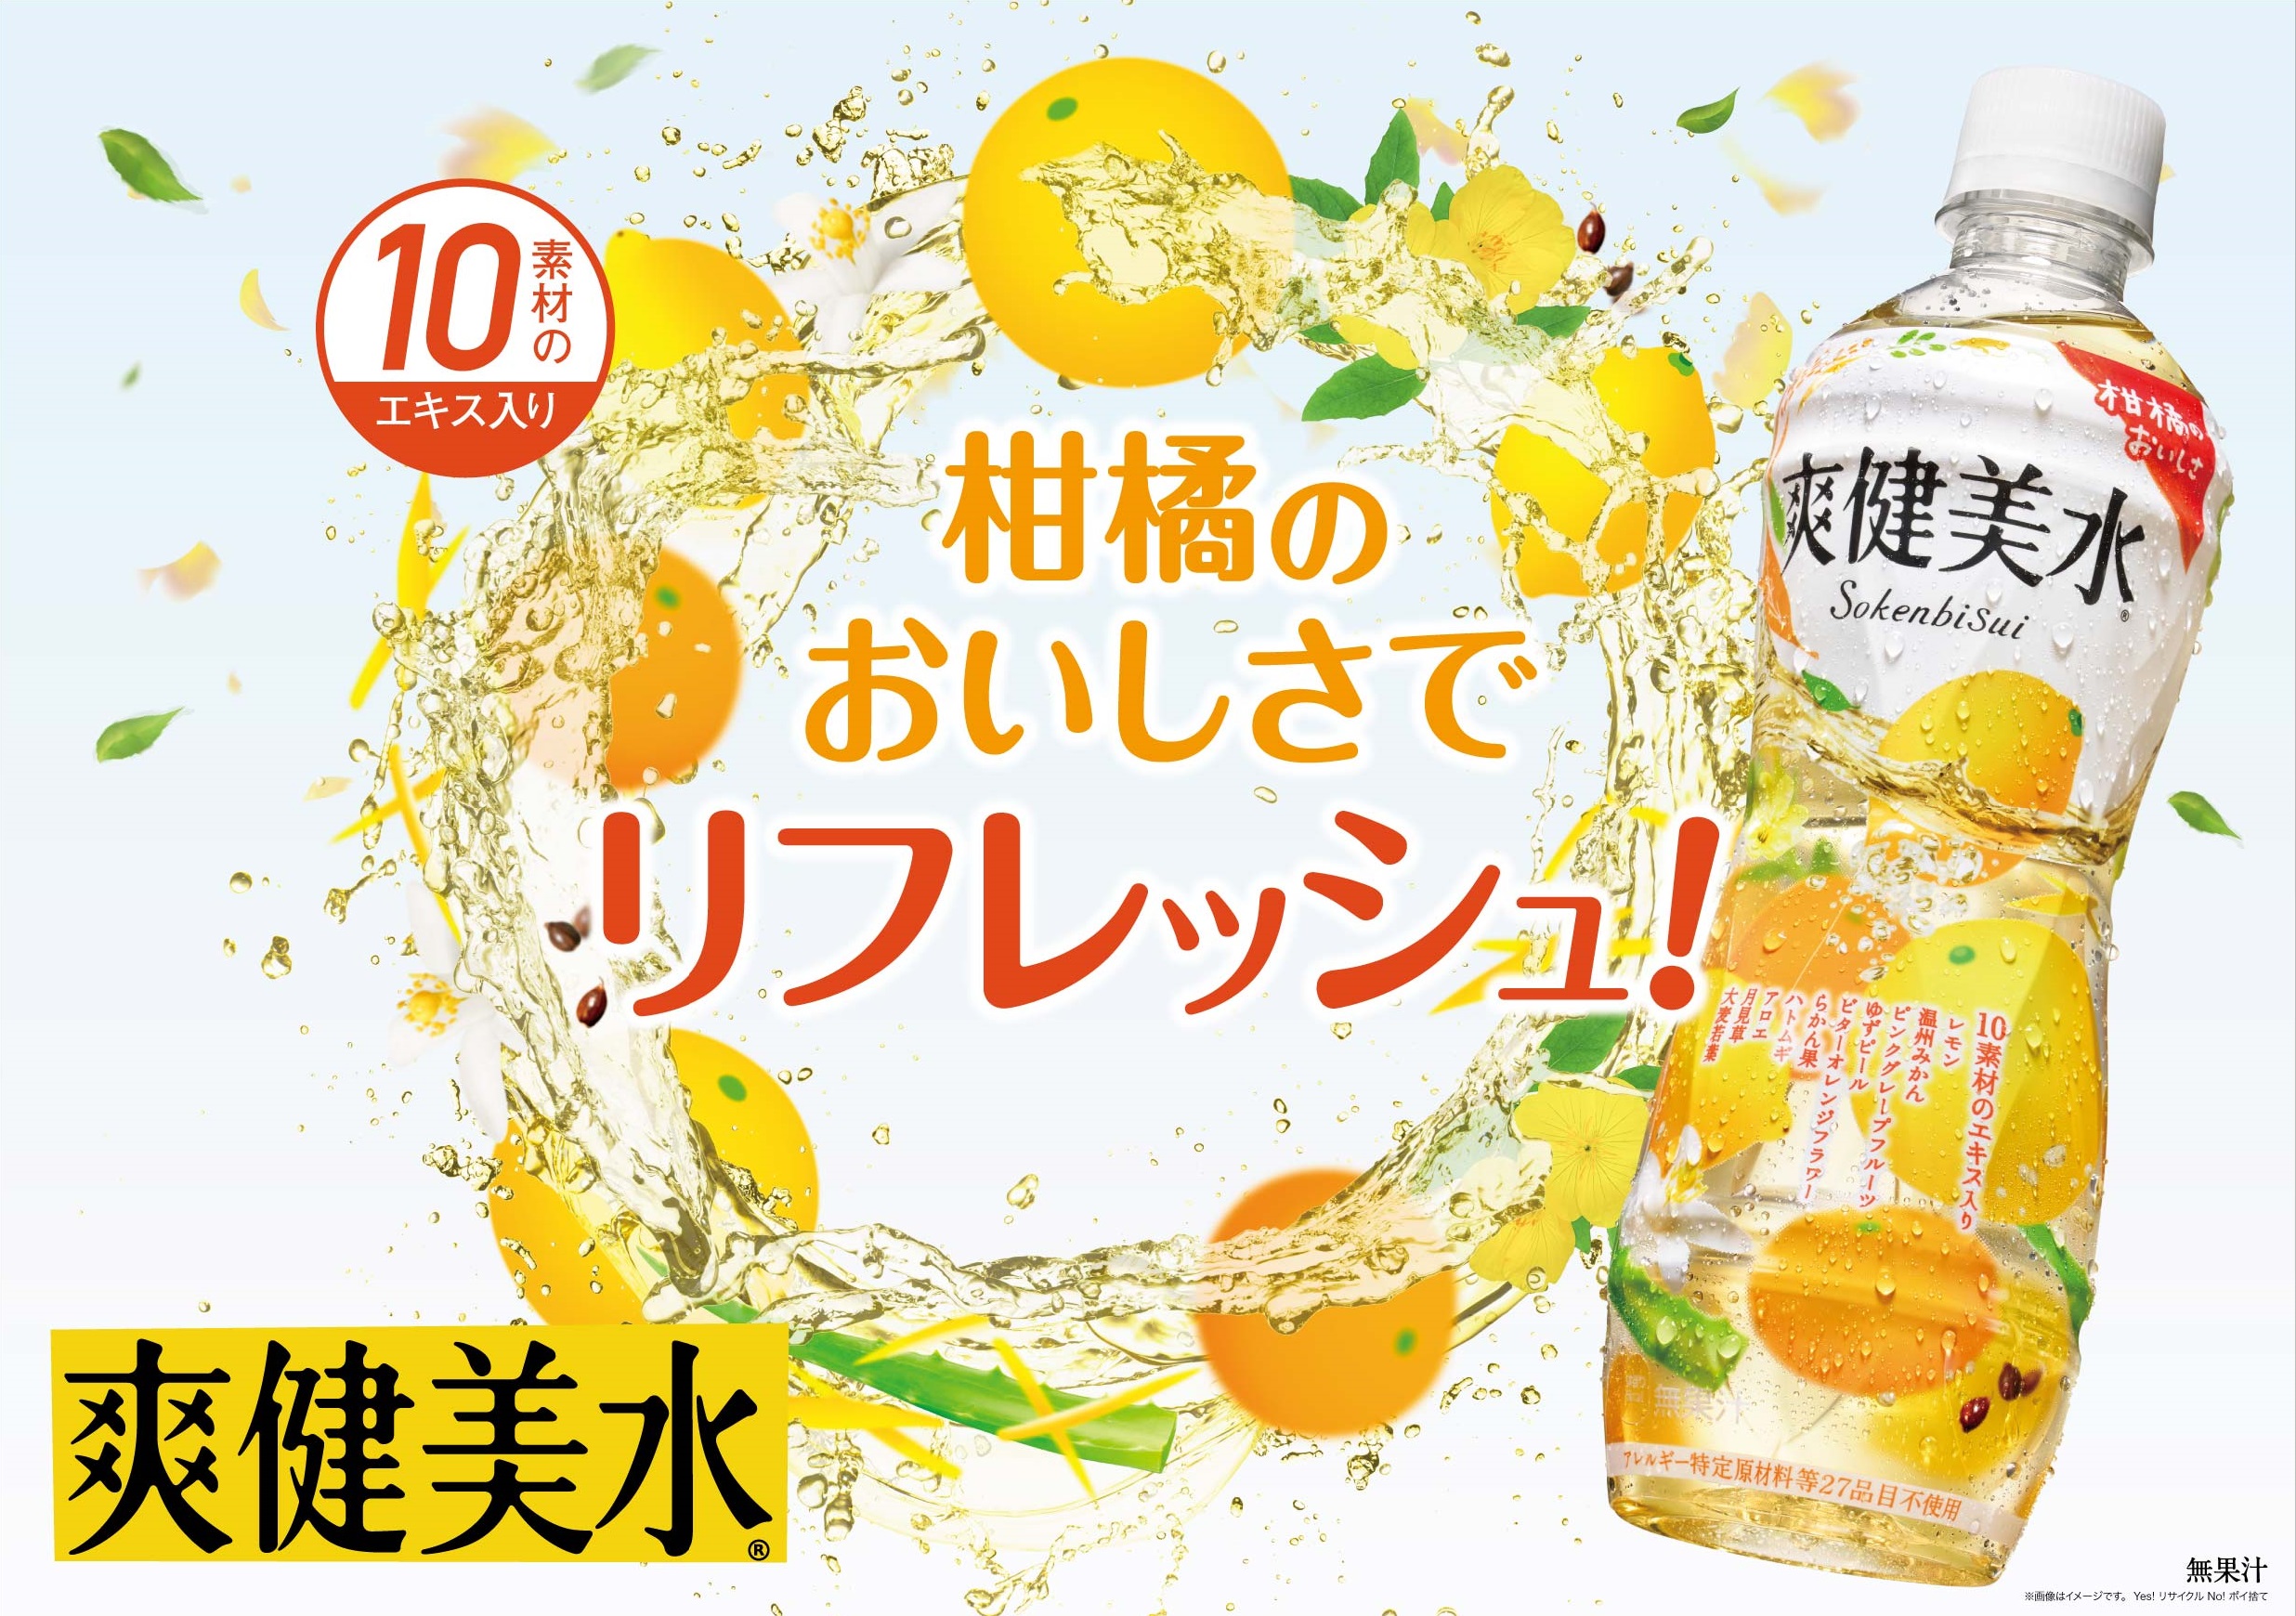 発売から3カ月で2 000万本突破した 爽健美水 が柑橘の爽やかなおいしさアップでリニューアル 爽健美水 6月3日 月 より全国で発売 日本コカ コーラ株式会社のプレスリリース